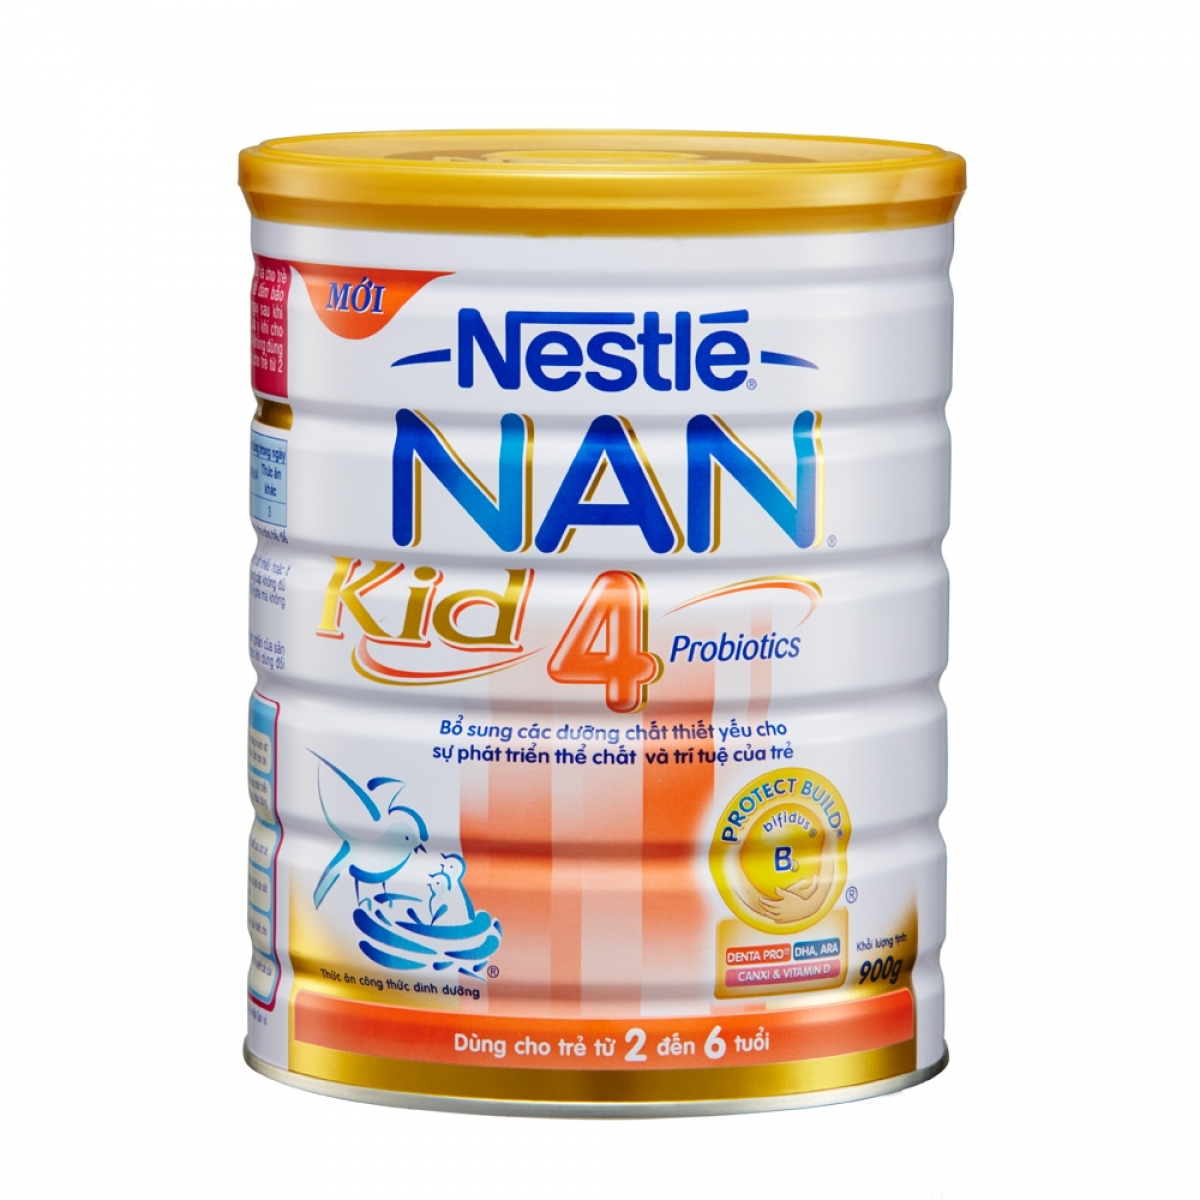 Sữa Nestlé NAN Kid 4 là một giải pháp hợp lý để tăng cường hệ miễn dịch